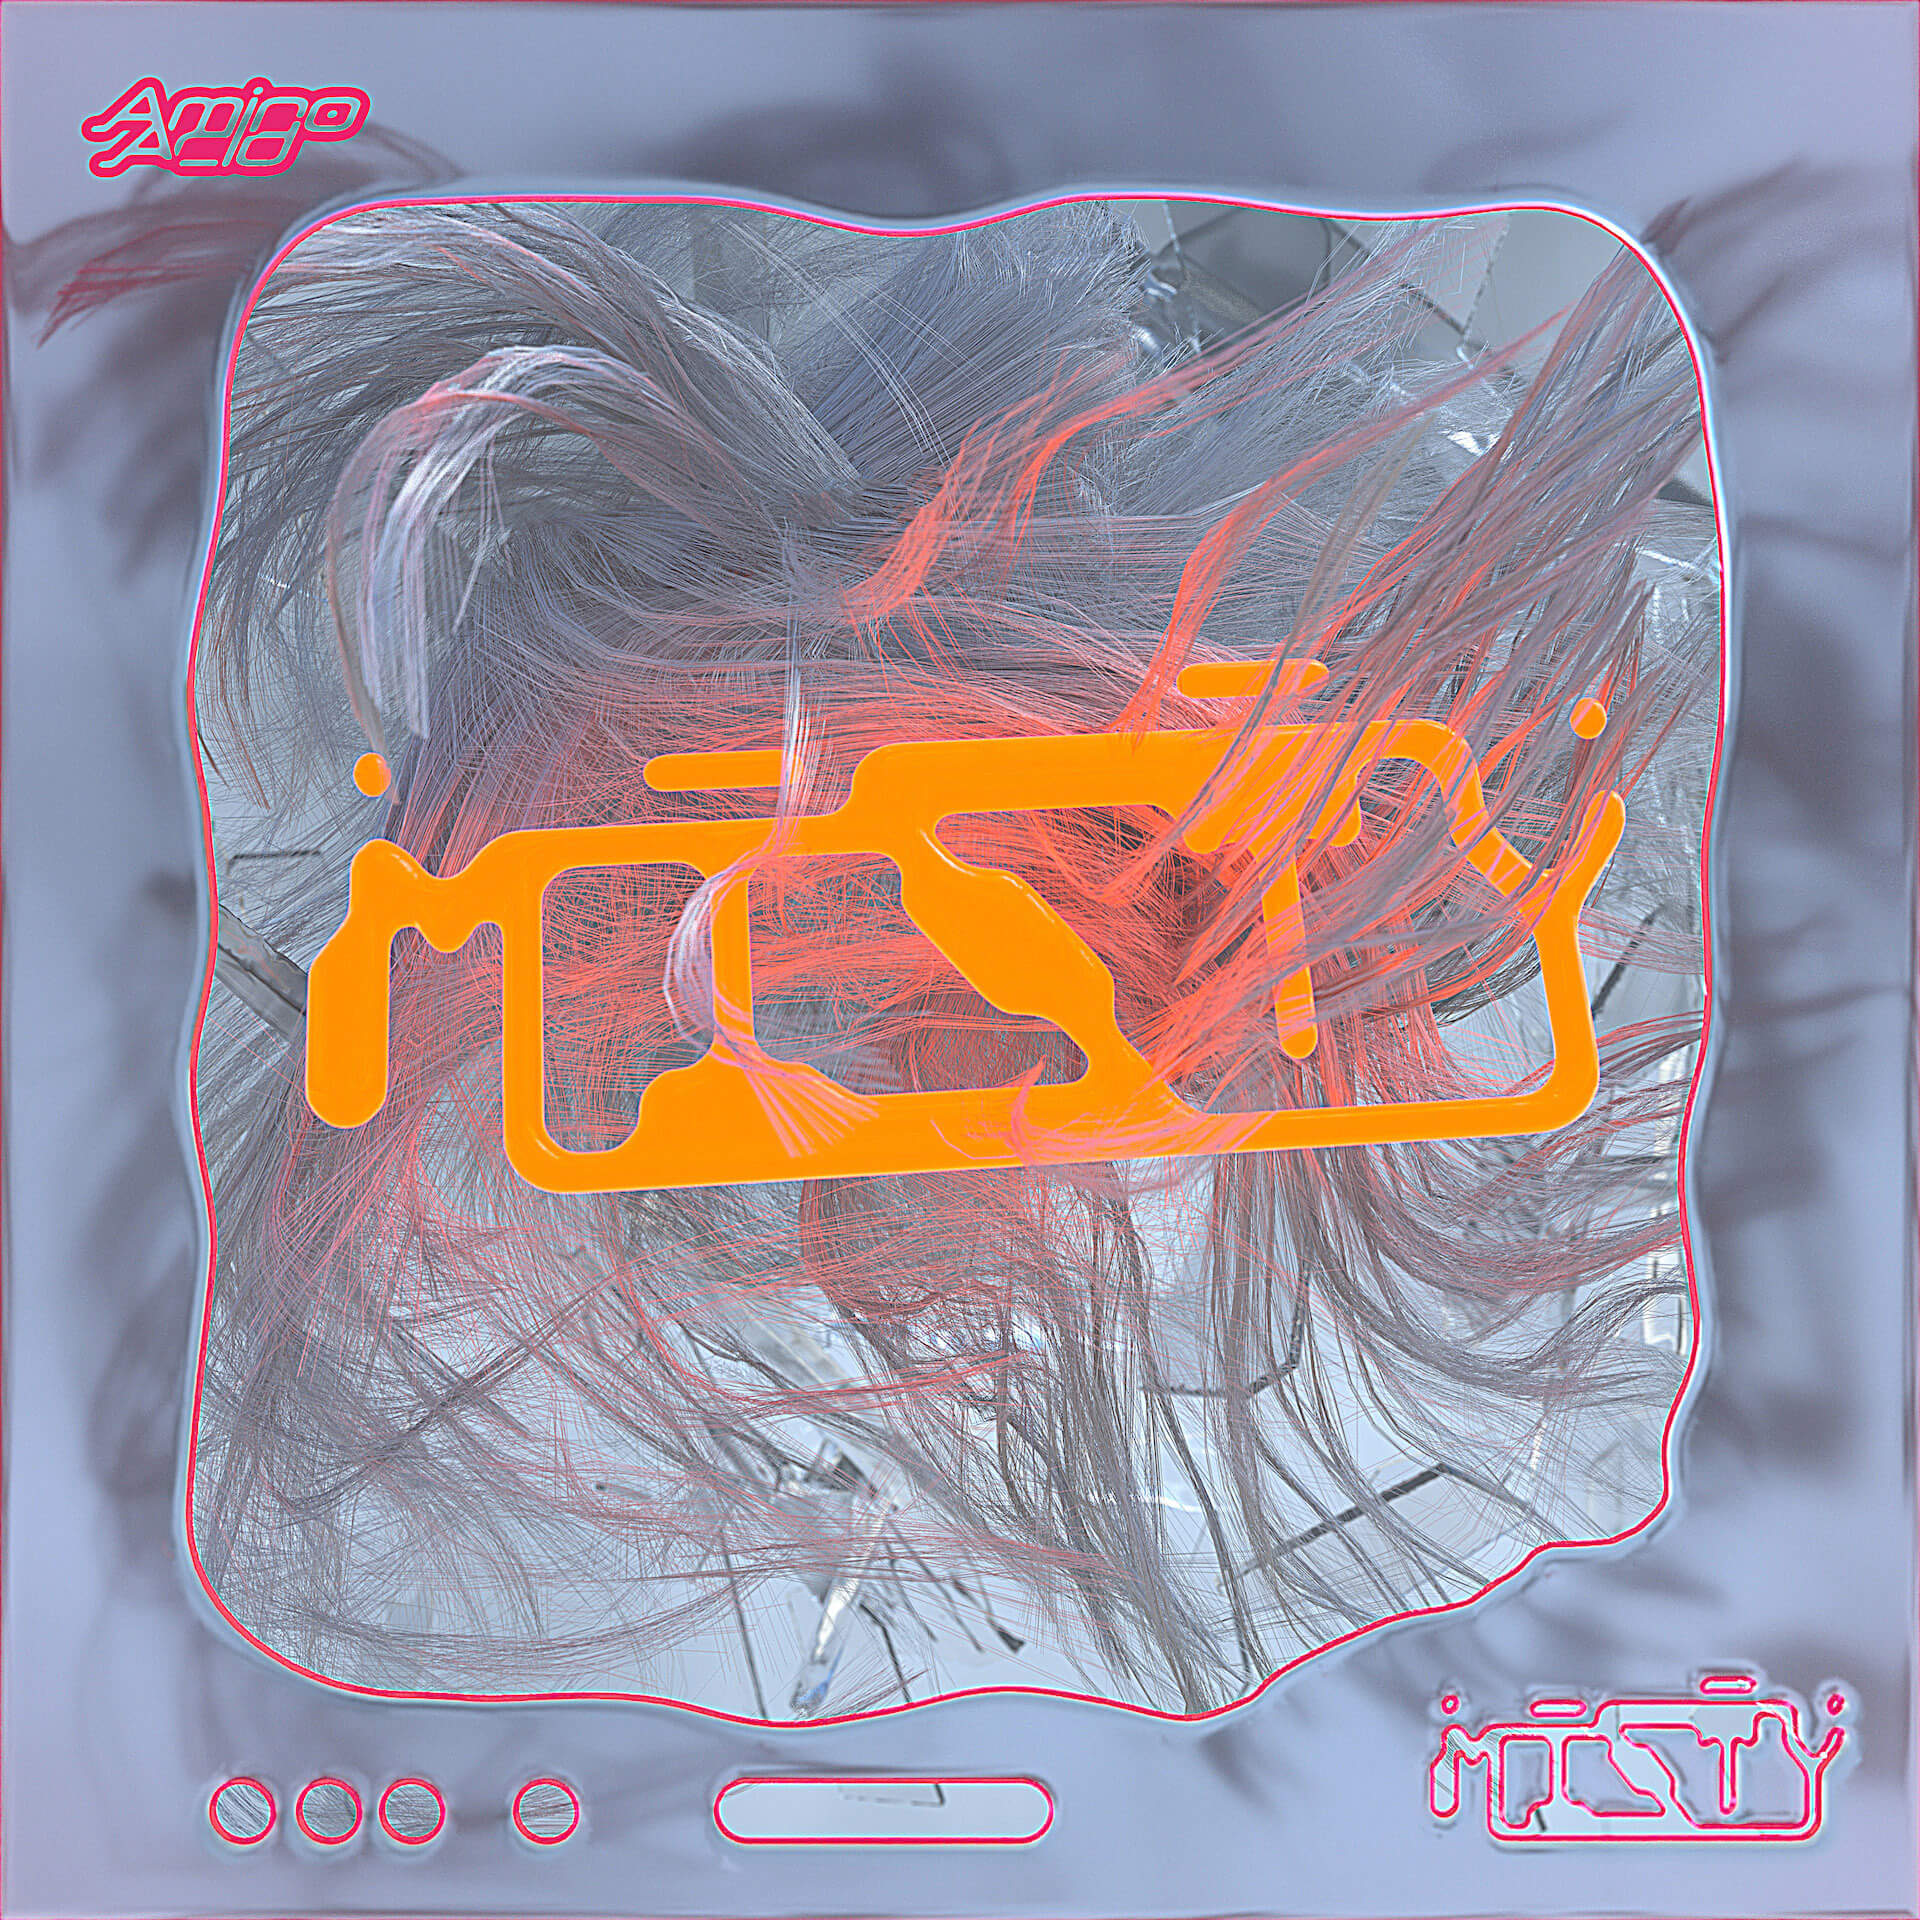 NTsKiの新曲“Misty”が本日配信リリース！JACKSON Kakiの手がけたMVも公開 music210608_NTsKi-MISTY-2